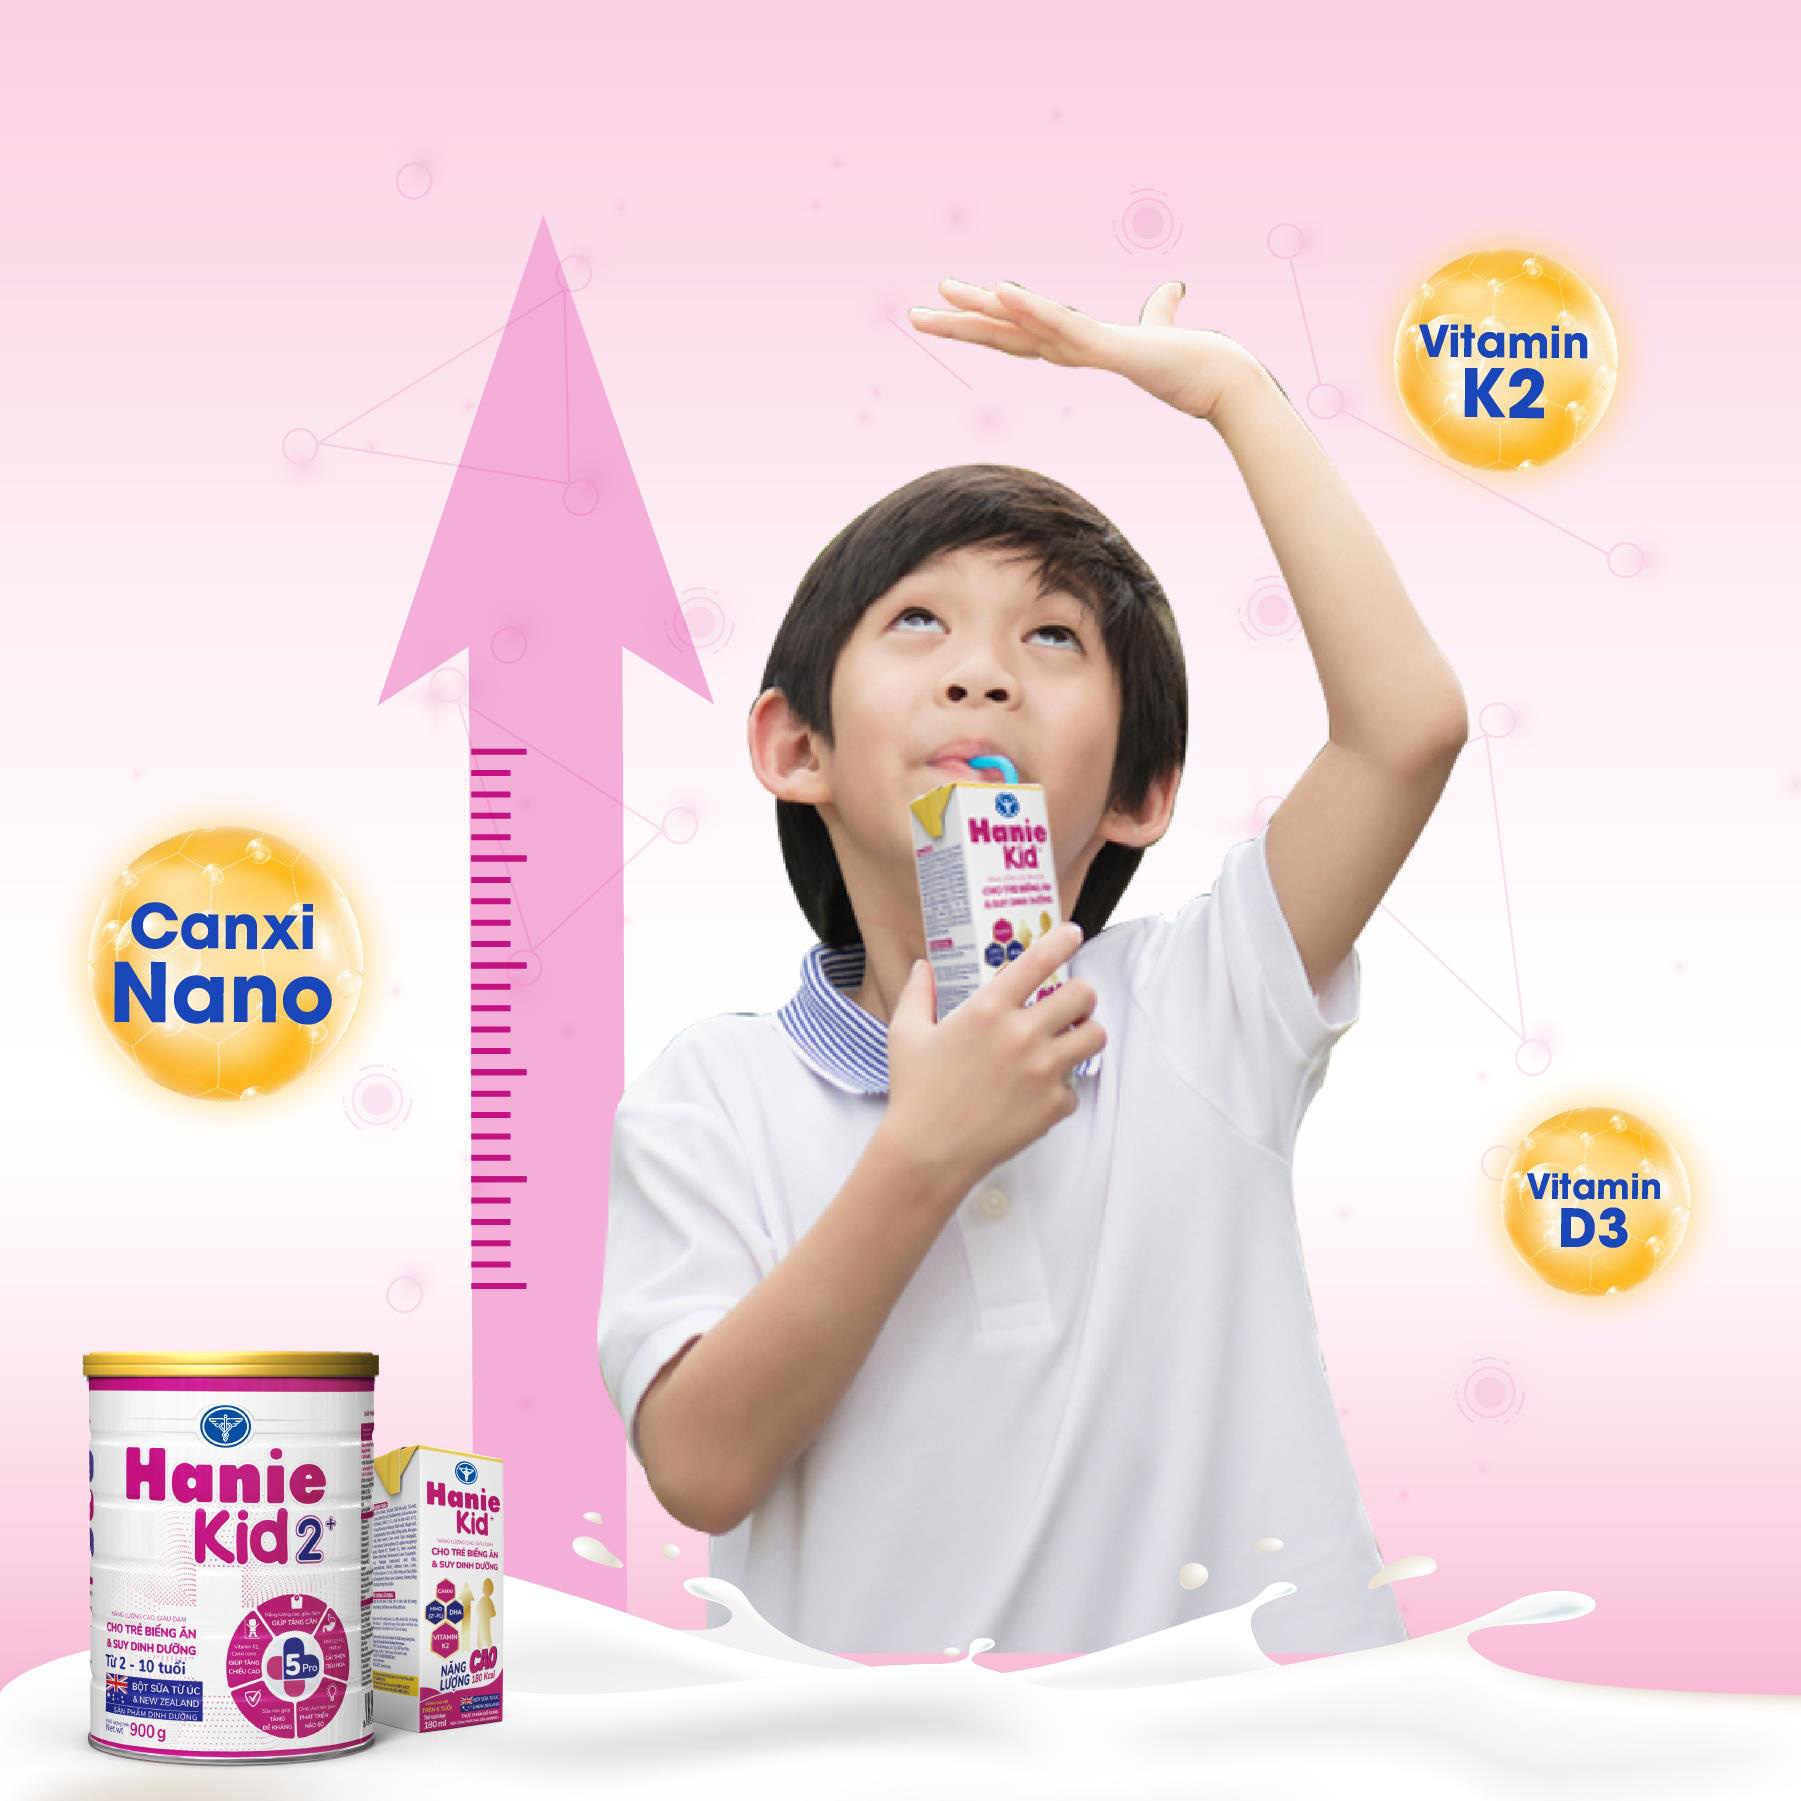 Sữa Hanie Kid 2+: Hệ dưỡng chất 5Pro giúp bé tăng cân và tăng chiều cao - Ảnh 3.